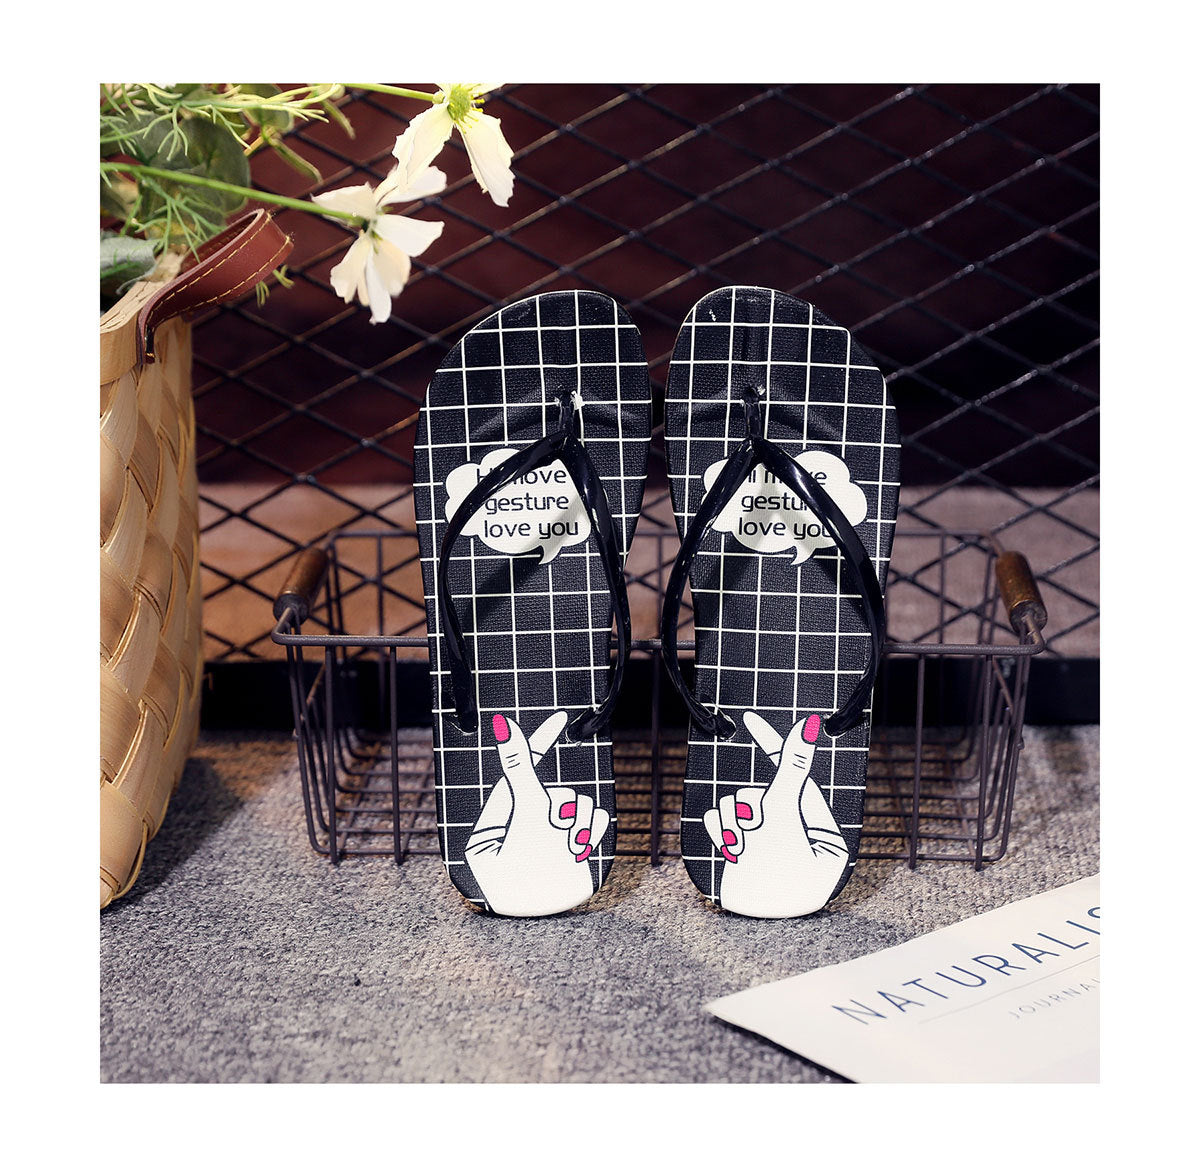 Women's Fruit Cartoon Lightweight Soft Sole Flip-flops Sandals